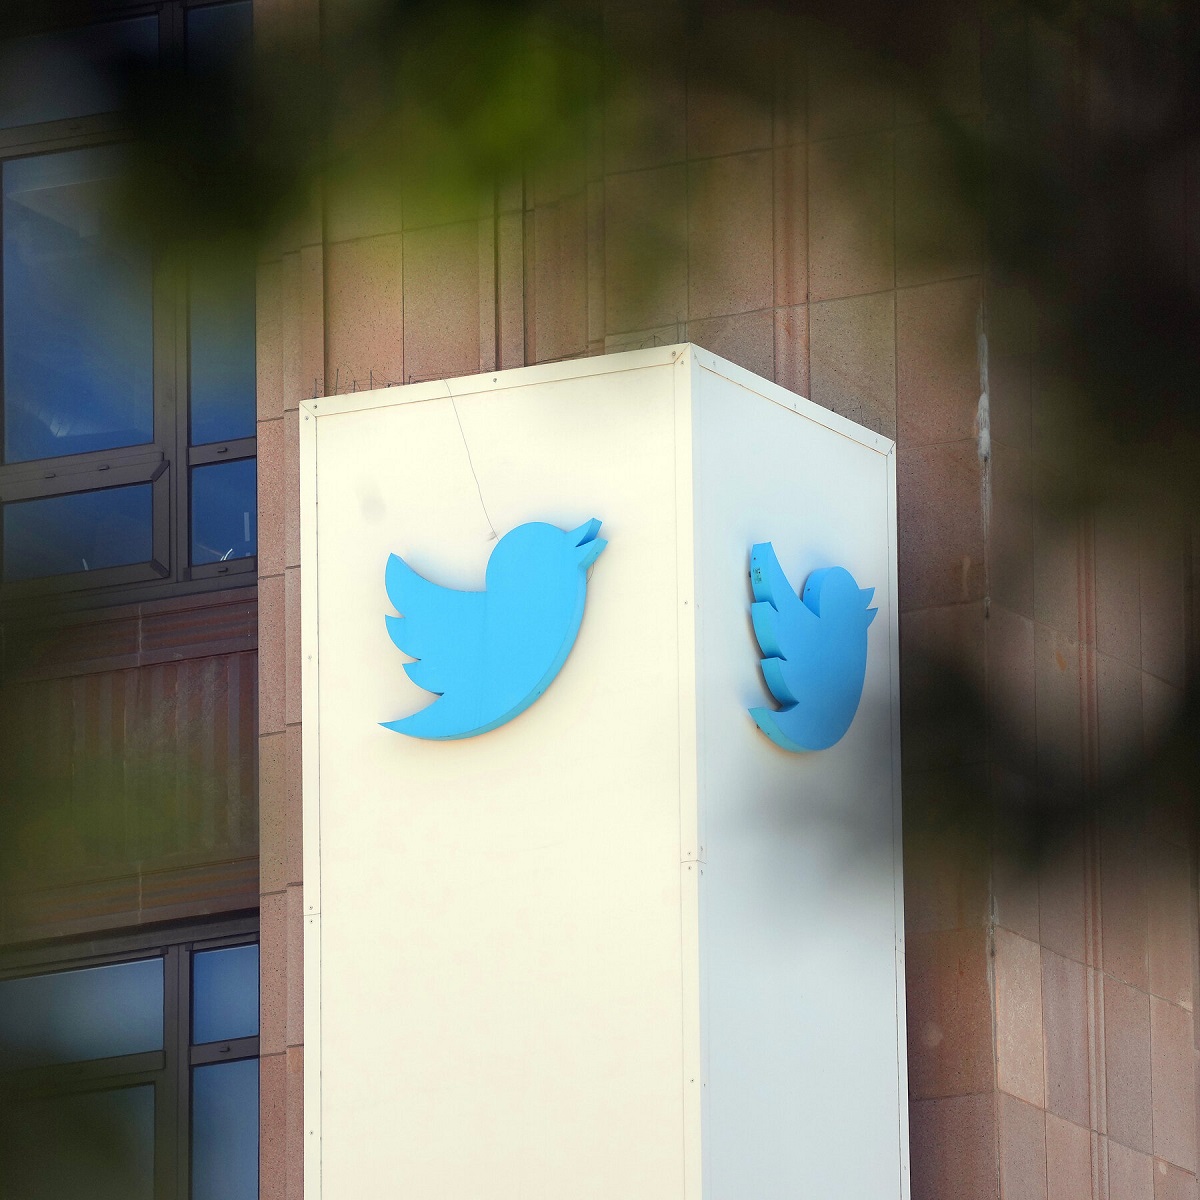 Según un informe, Twitter promovió en secreto operaciones psicológicas estadounidenses en el Medio Oriente.